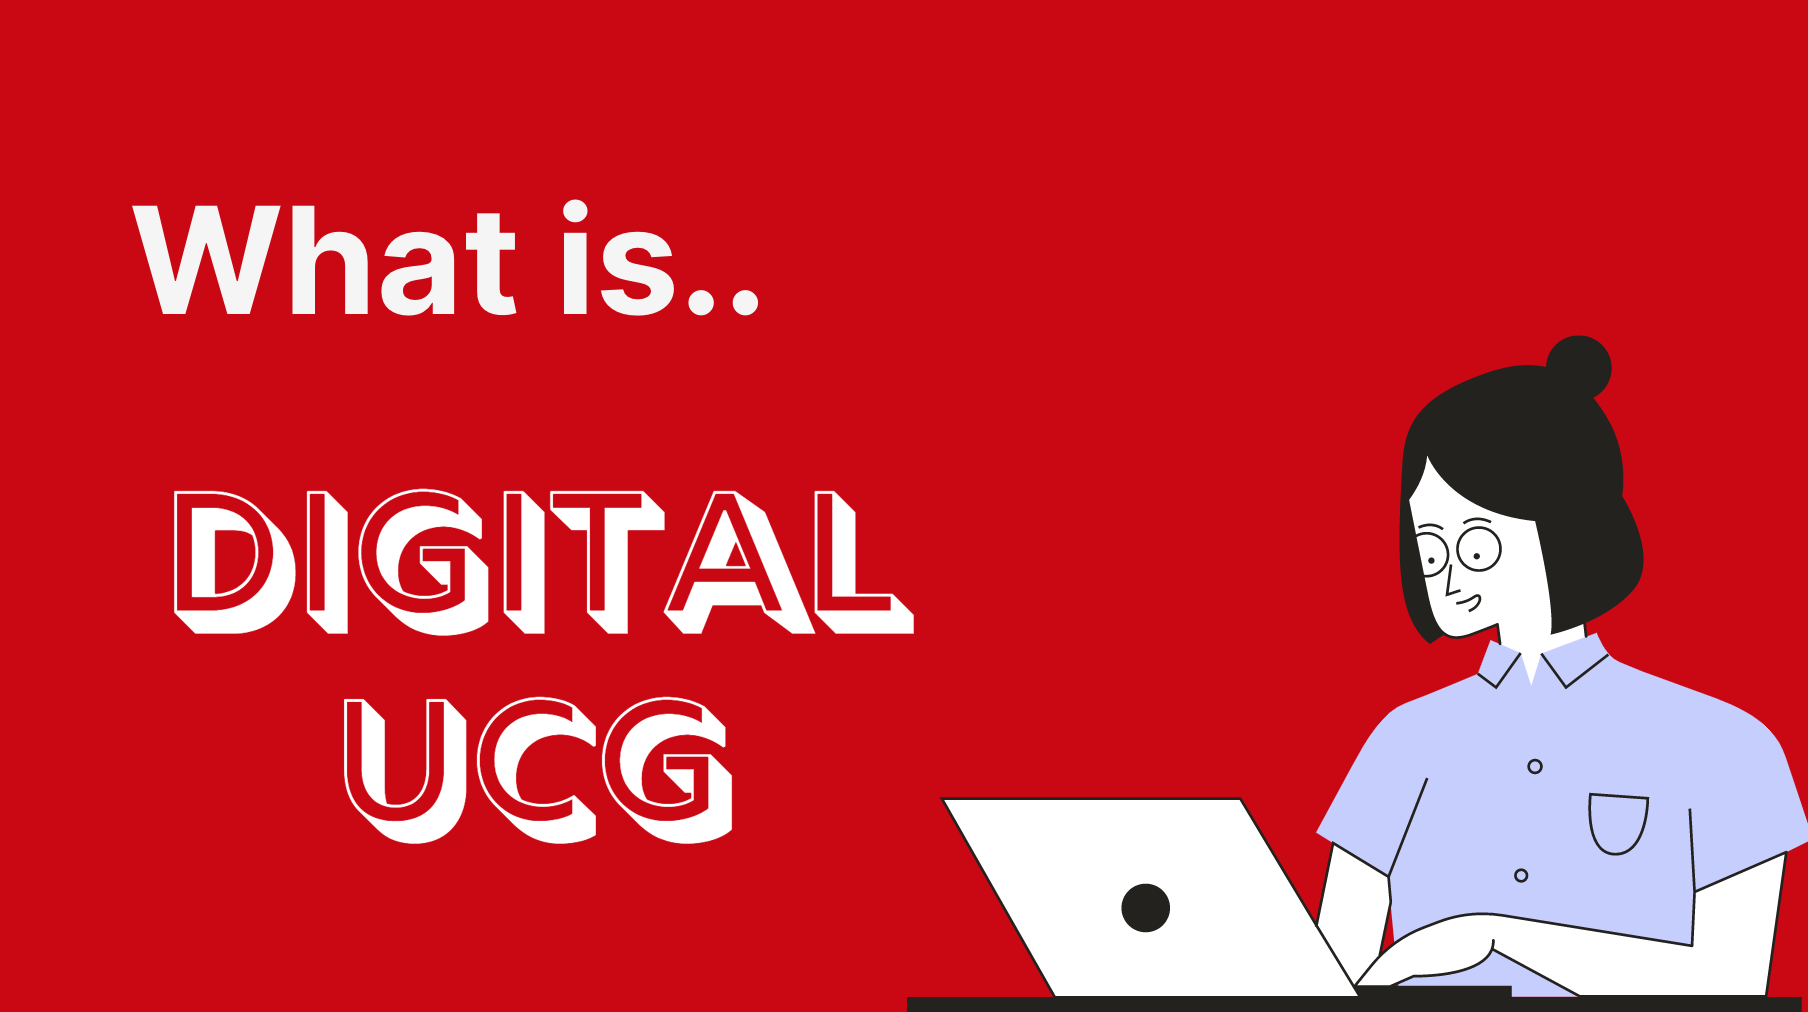 What is Digital UCG?